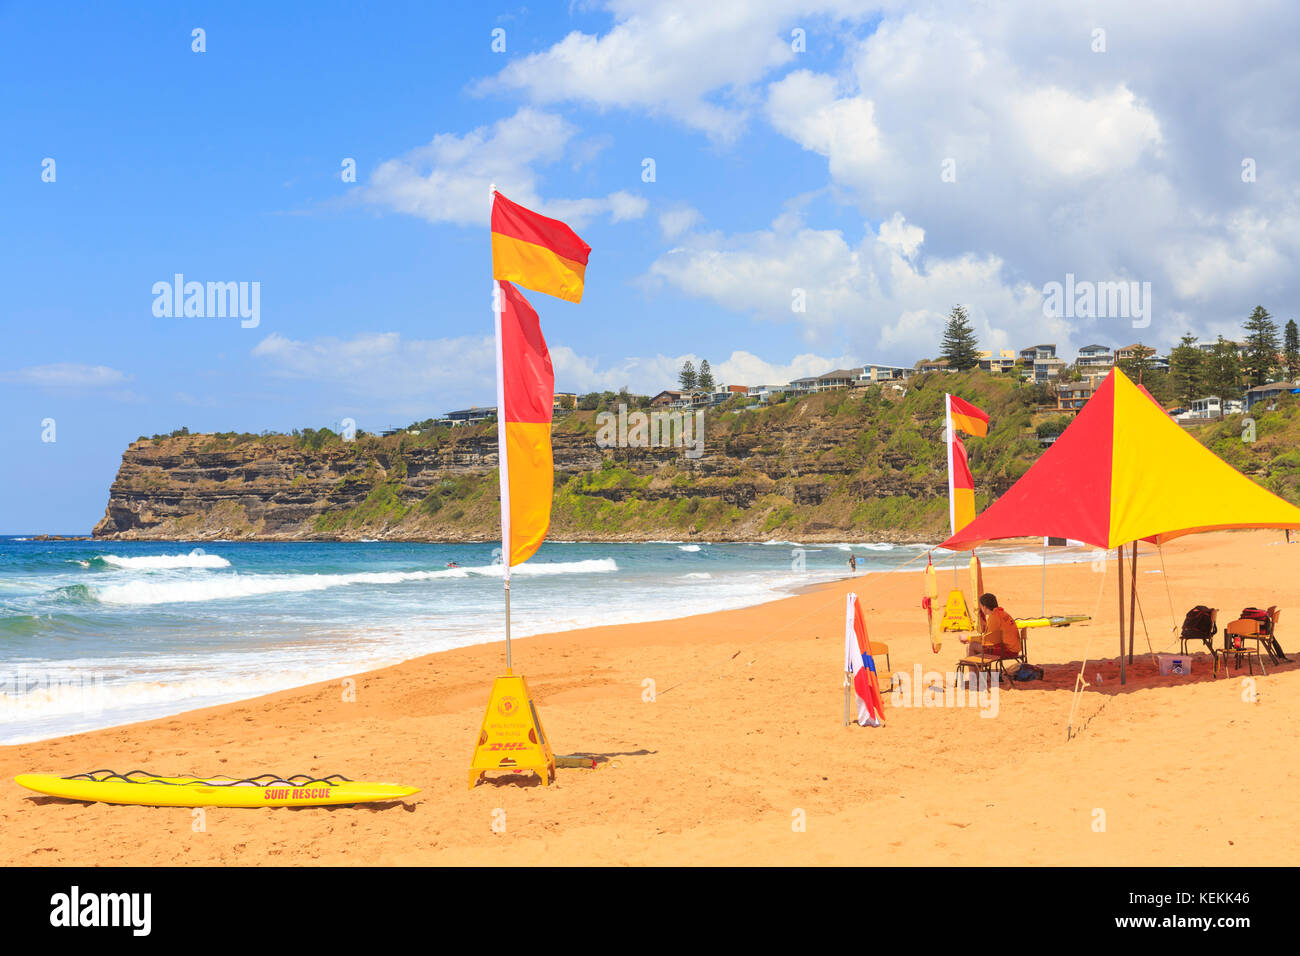 Surf salvavidas rescate en playa, playa Bungan Bungan es una popular playa de surf en las playas del norte de Sydney, Nueva Gales del Sur, Australia Foto de stock